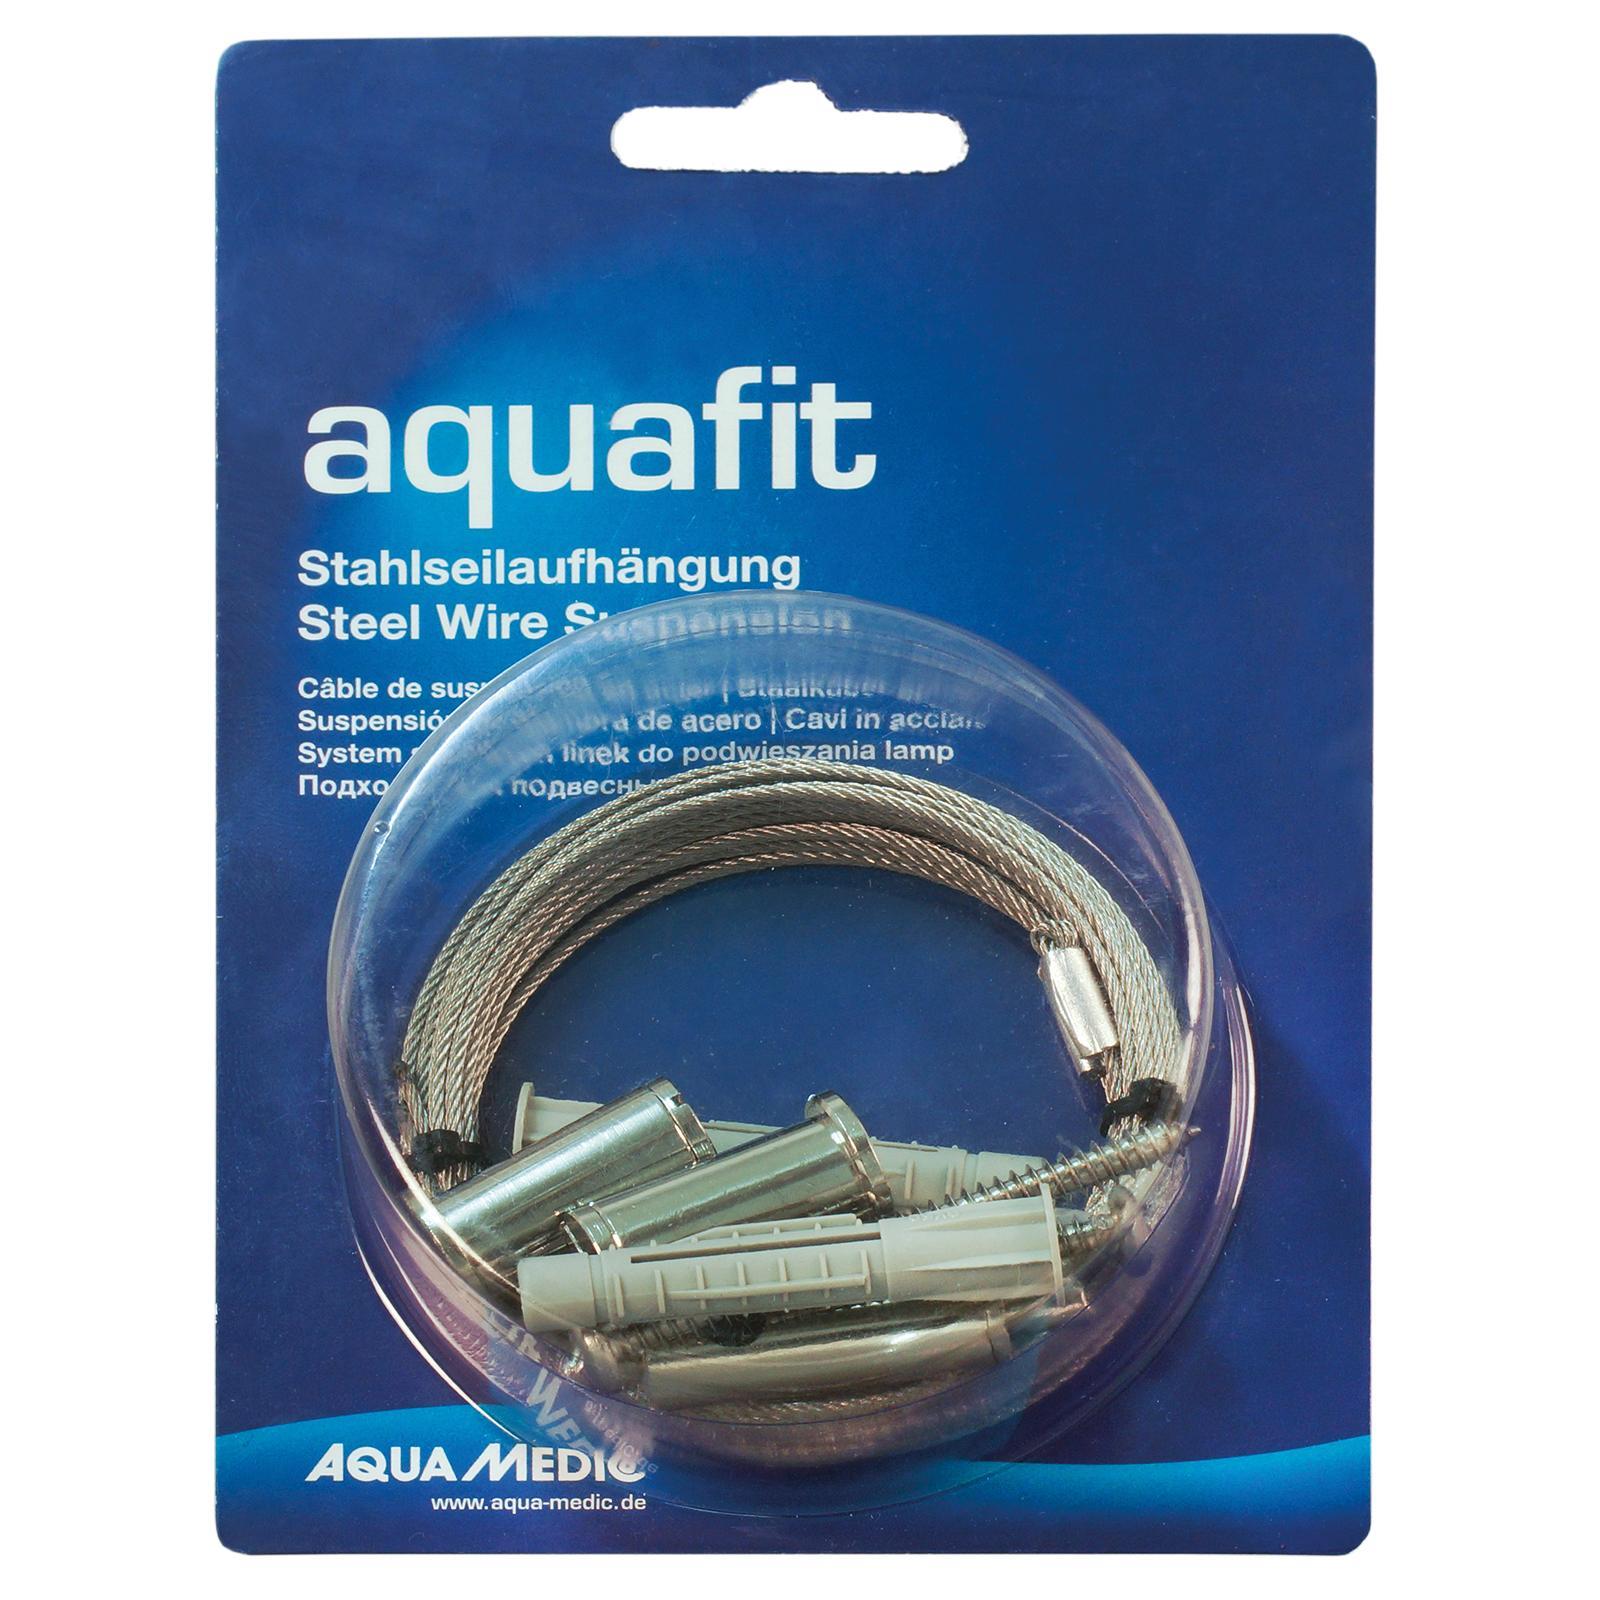 Aqua Medic aquafit